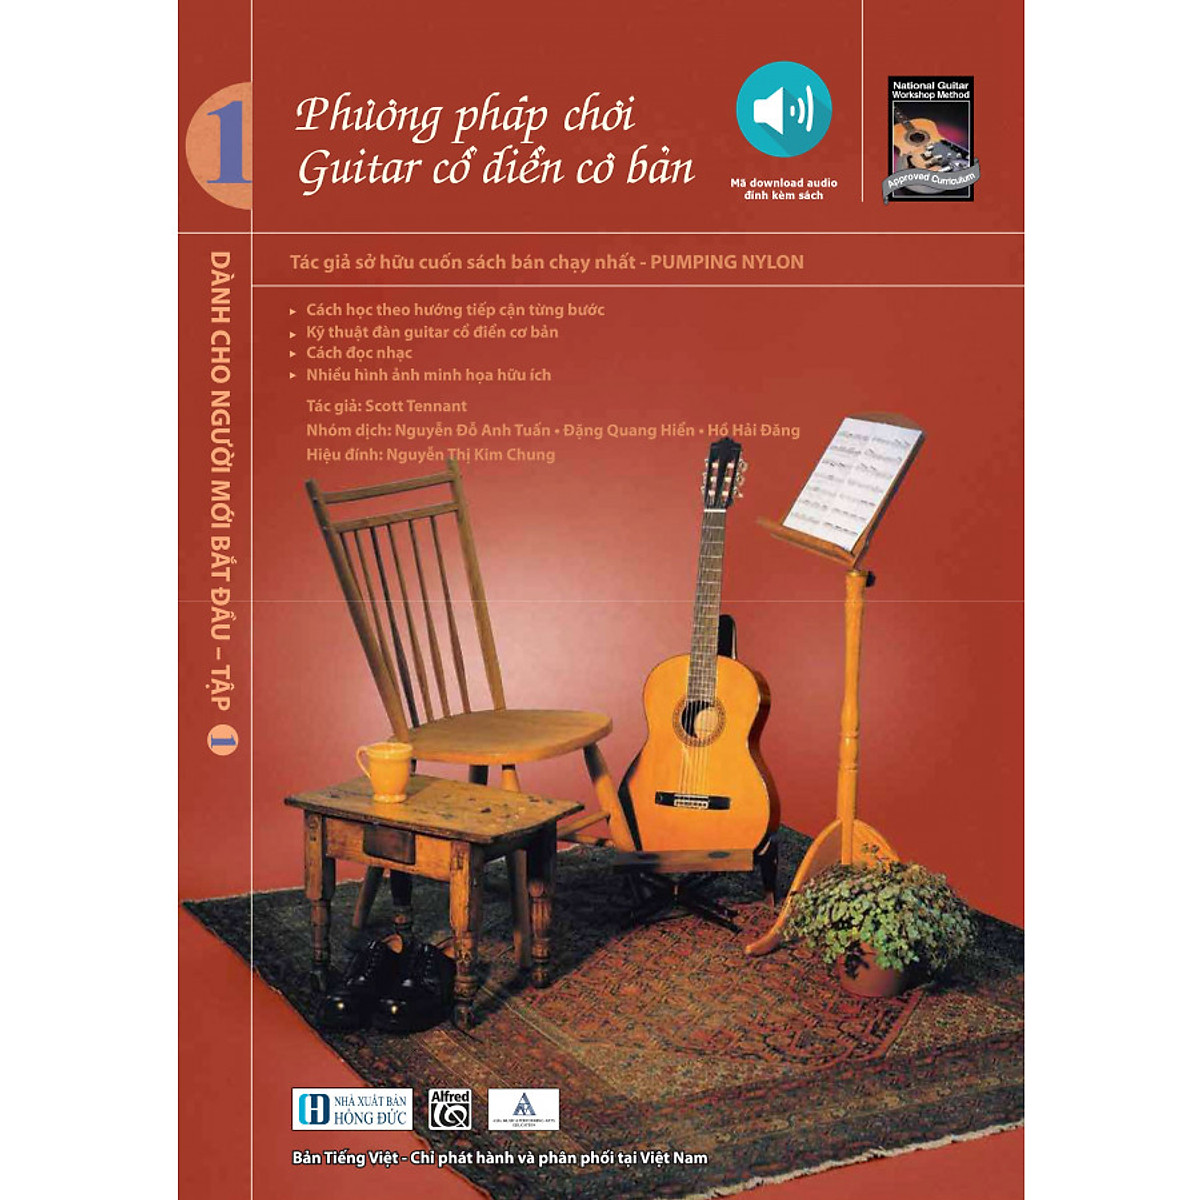 Phương pháp chơi guitar cổ điển cơ bản (Alfred Music Book) - tập 1